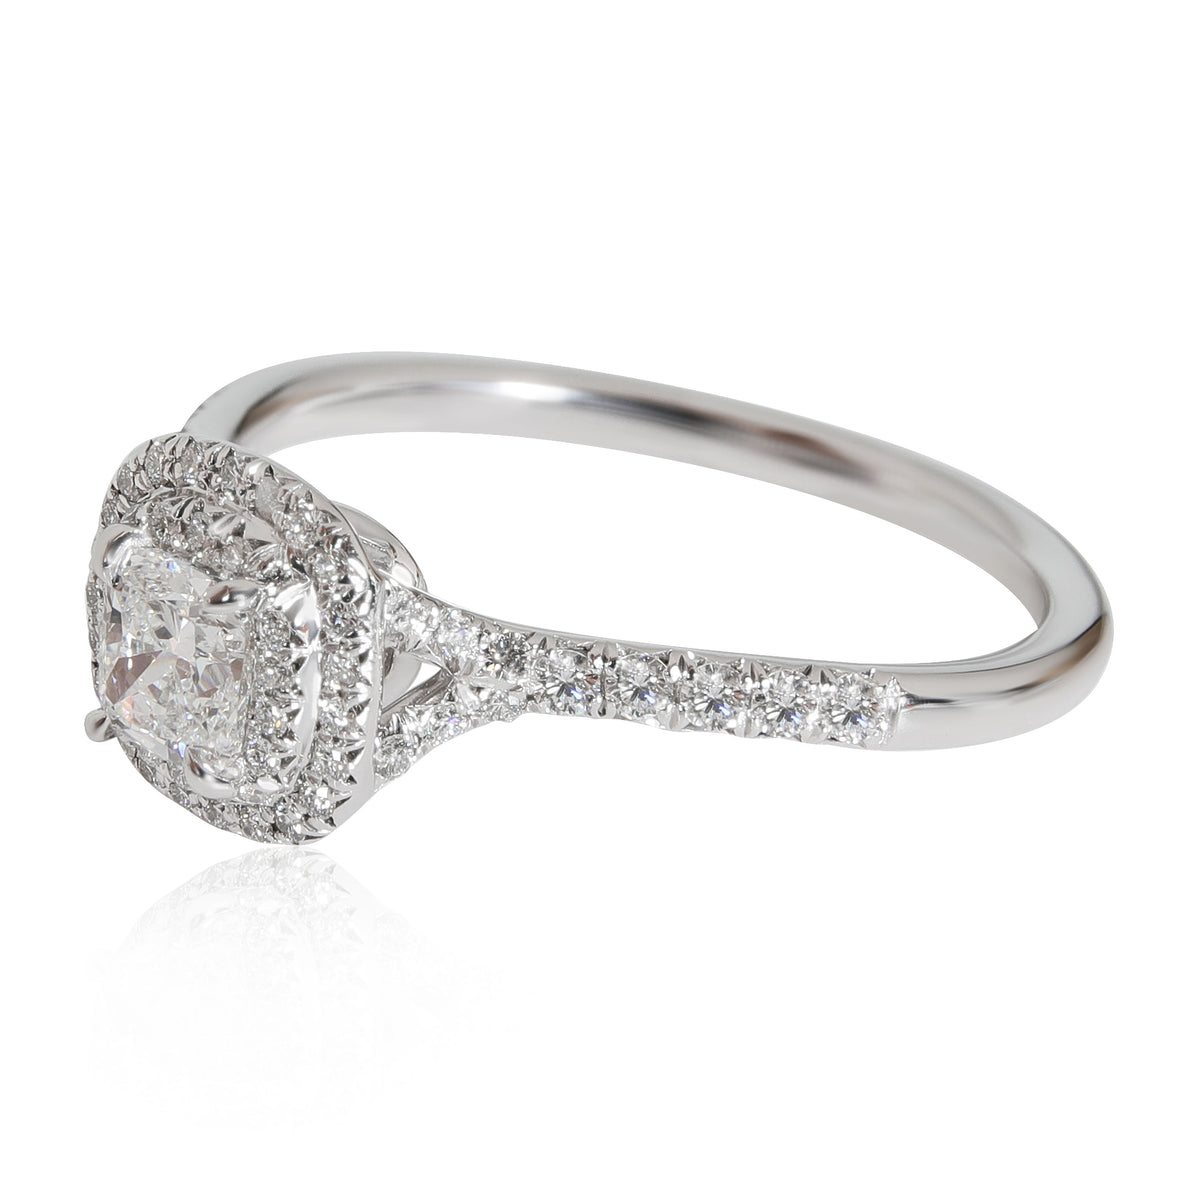 Tiffany & Co. Soleste Diamond Engagement Ring in Platinum F VS1 0.80 ctw